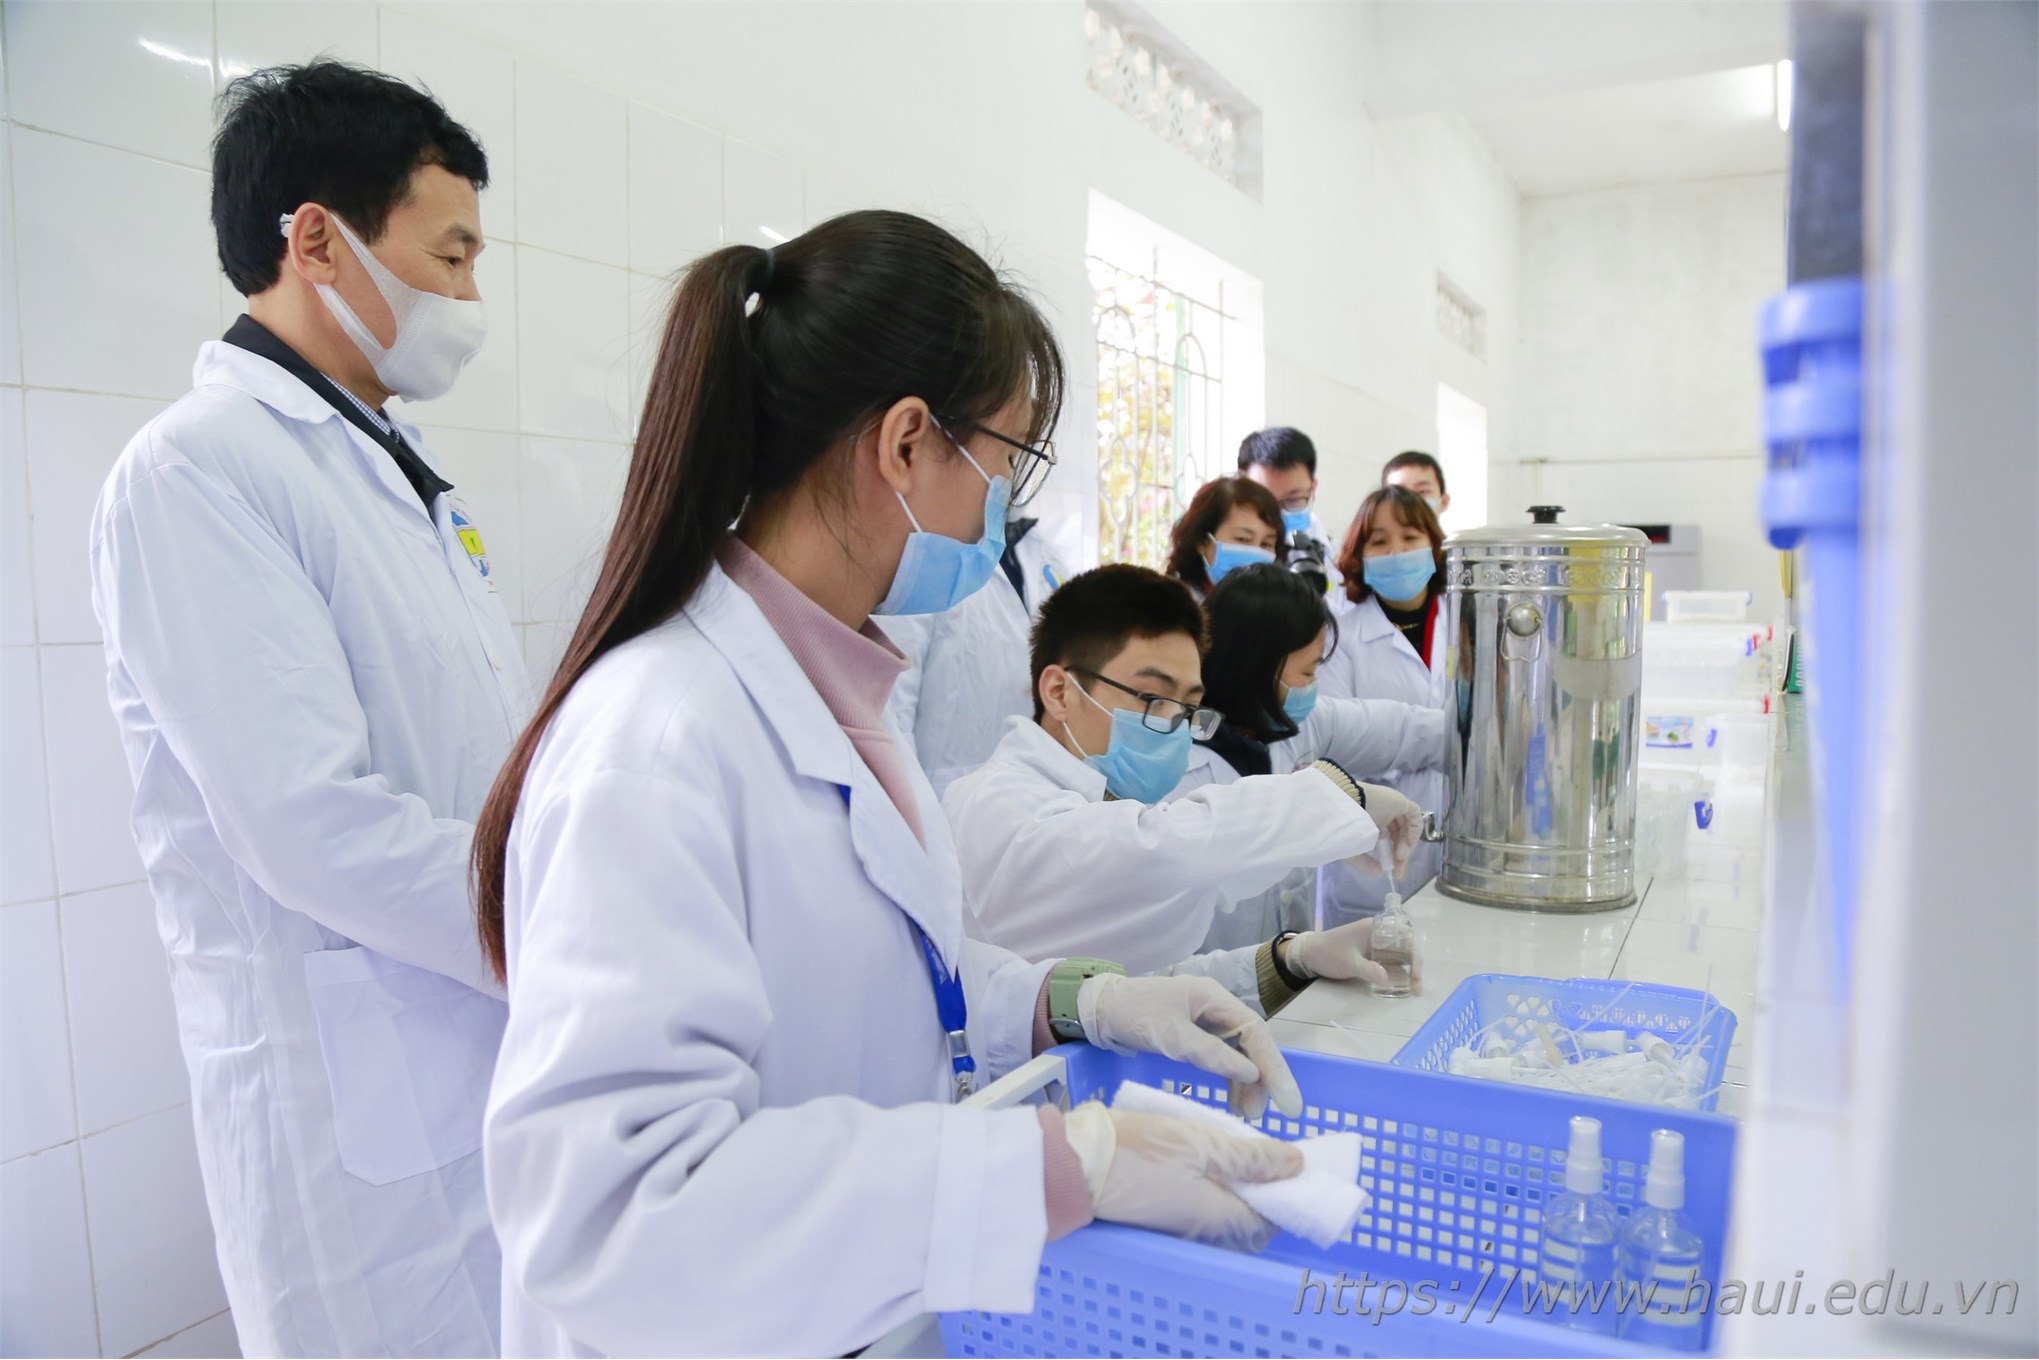 Chung tay vì sức khỏe cộng đồng: Khoa Công nghệ hóa sản xuất dung dịch rửa tay khô phát miễn phí cho cán bộ, giảng viên, sinh viên Nhà trường